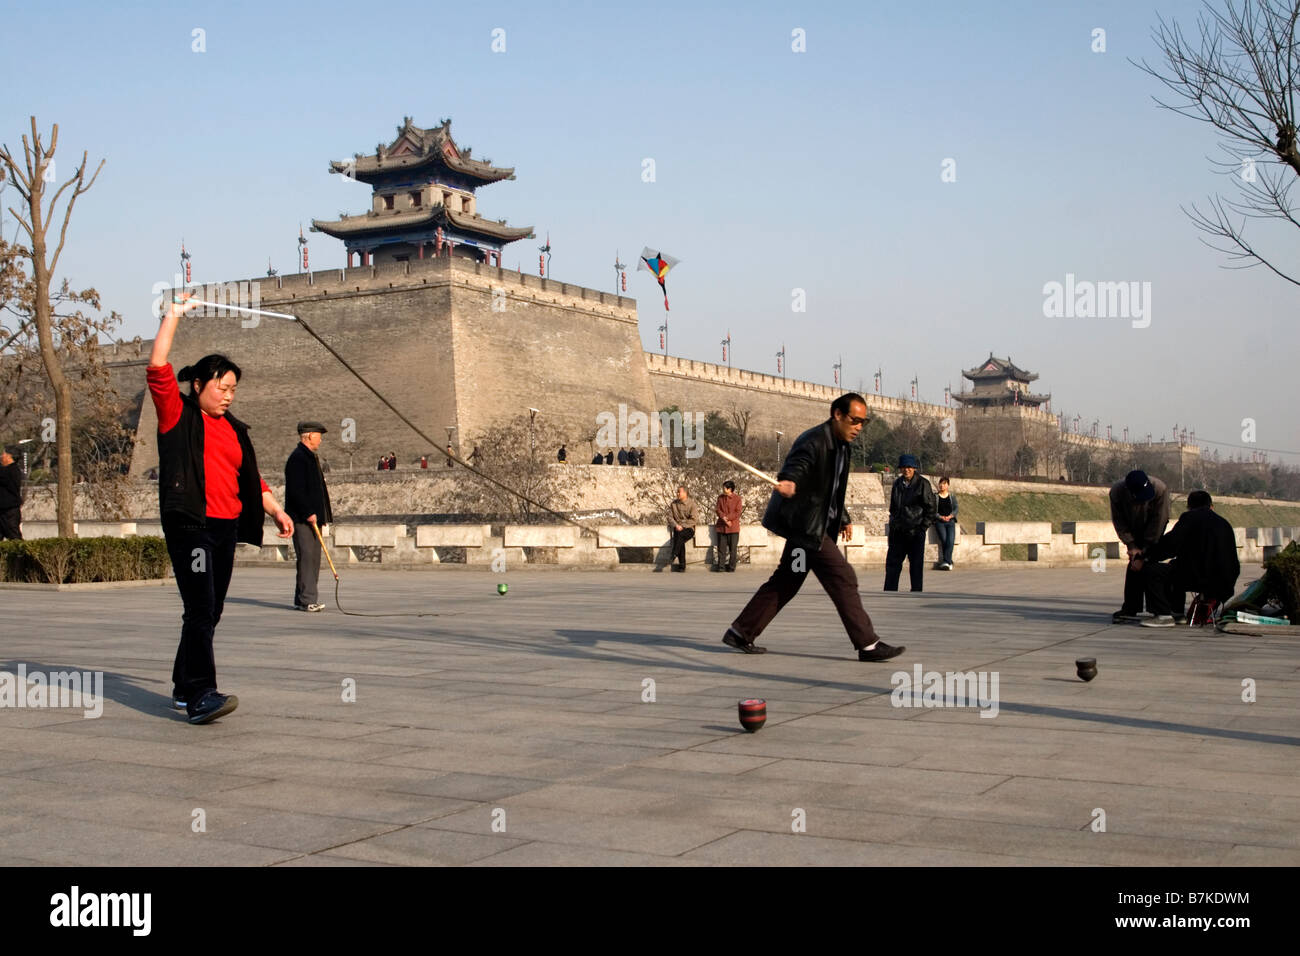 Les gens de jouer et se promener dans les douves d'un parc de stationnement à l'extérieur de la vieille ville de Xian mur défensif dans la province du Shaanxi Banque D'Images